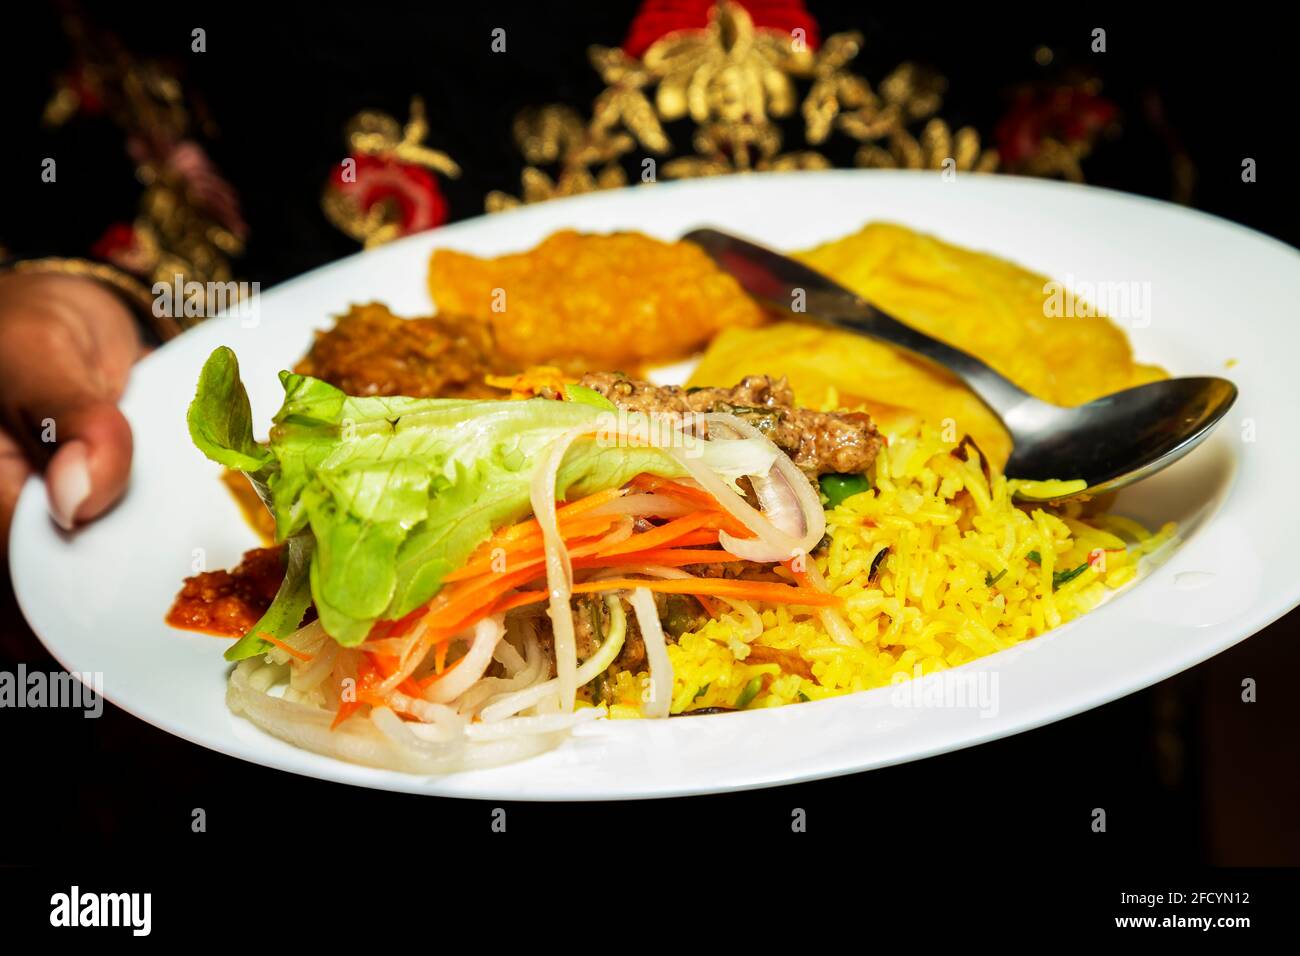 vegetarian food in a Hindu wedding reception Stock Photo